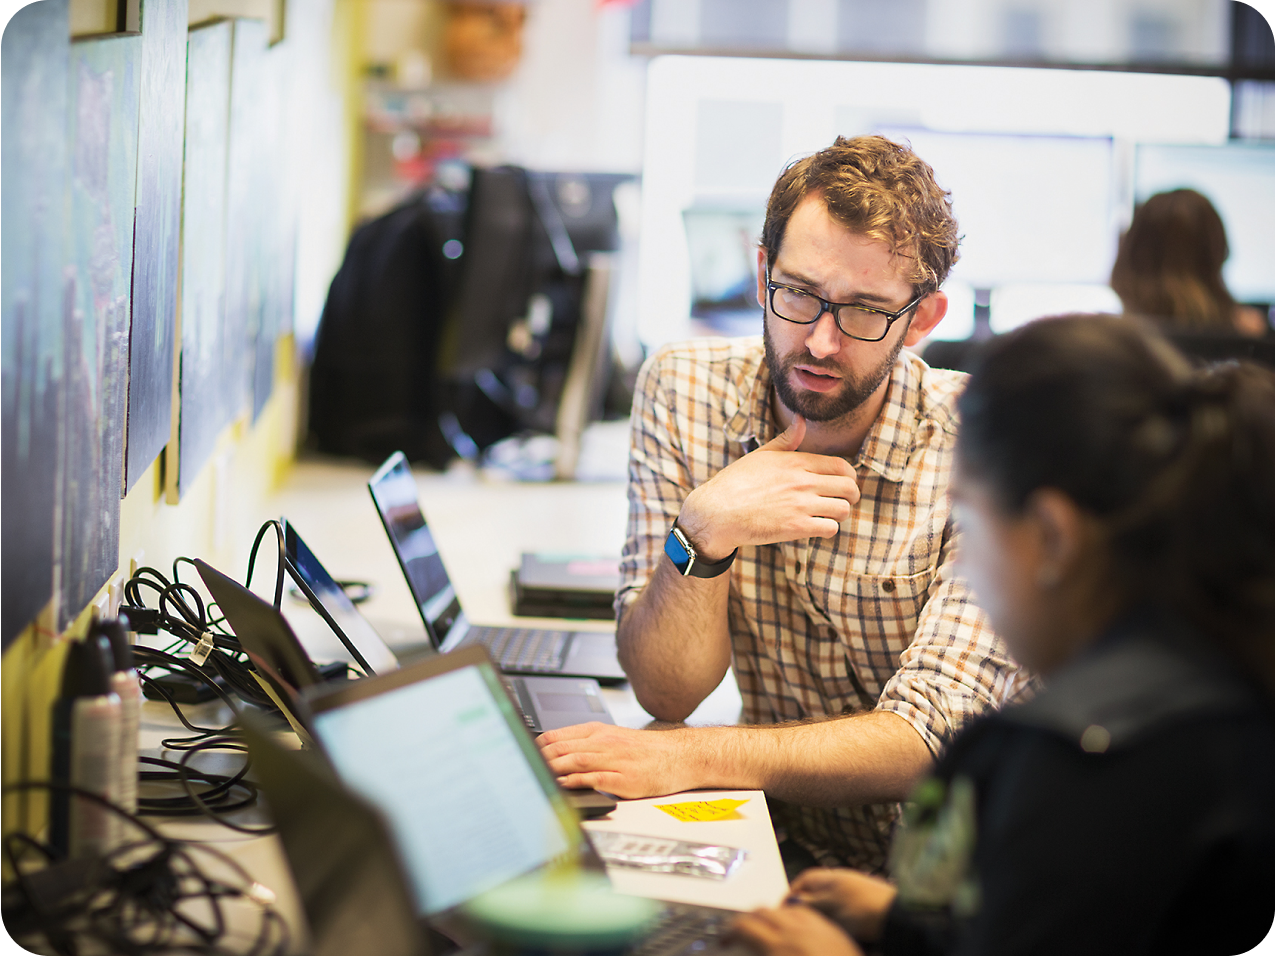 Бородатый мужчина в очках жестикулирует во время беседы с коллегой-женщиной, оба используют ноутбуки в оживленном офисе.